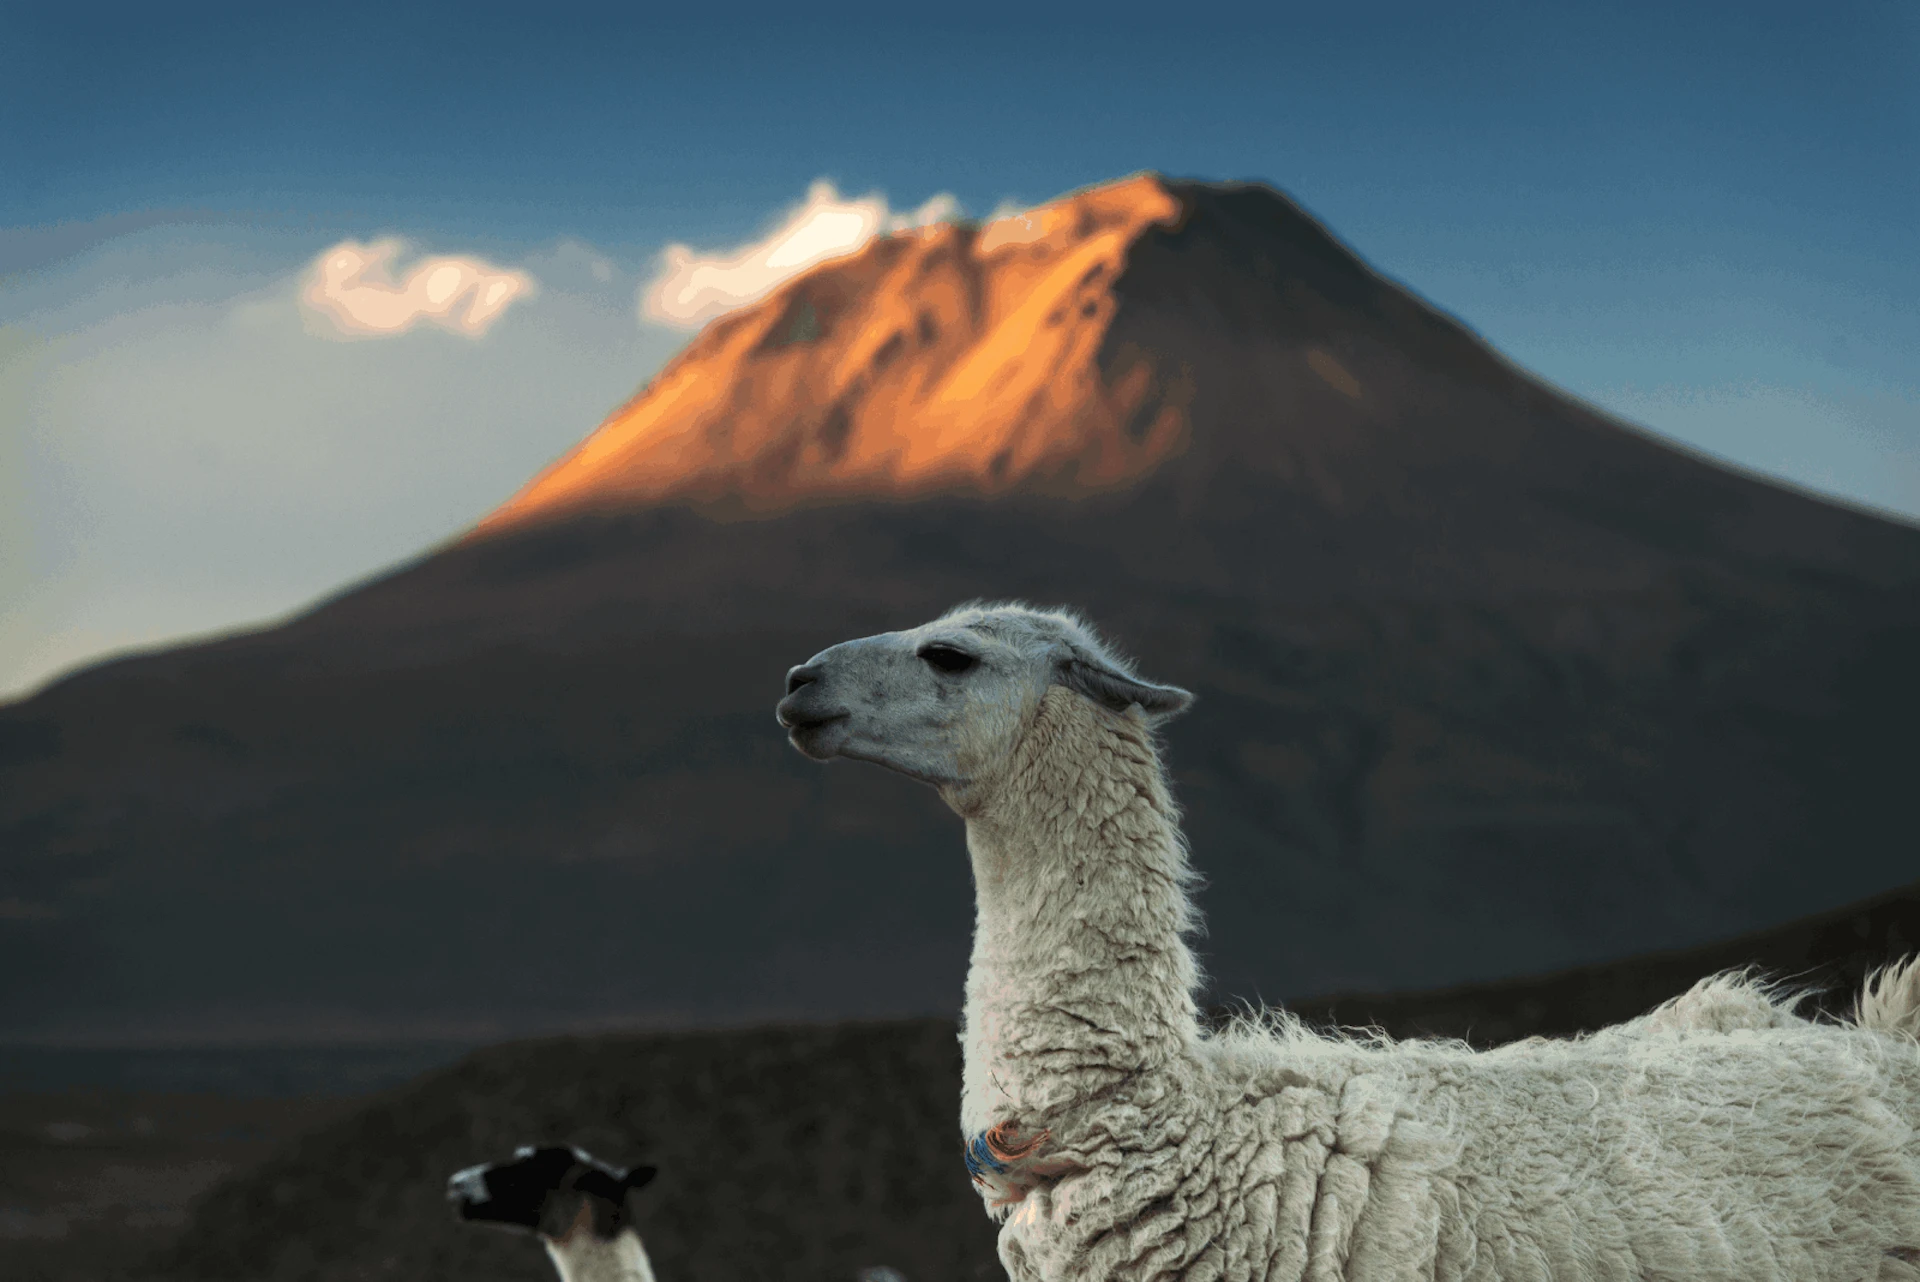 Qué ver en el Desierto de Atacama, incluyendo animales, salares y flora